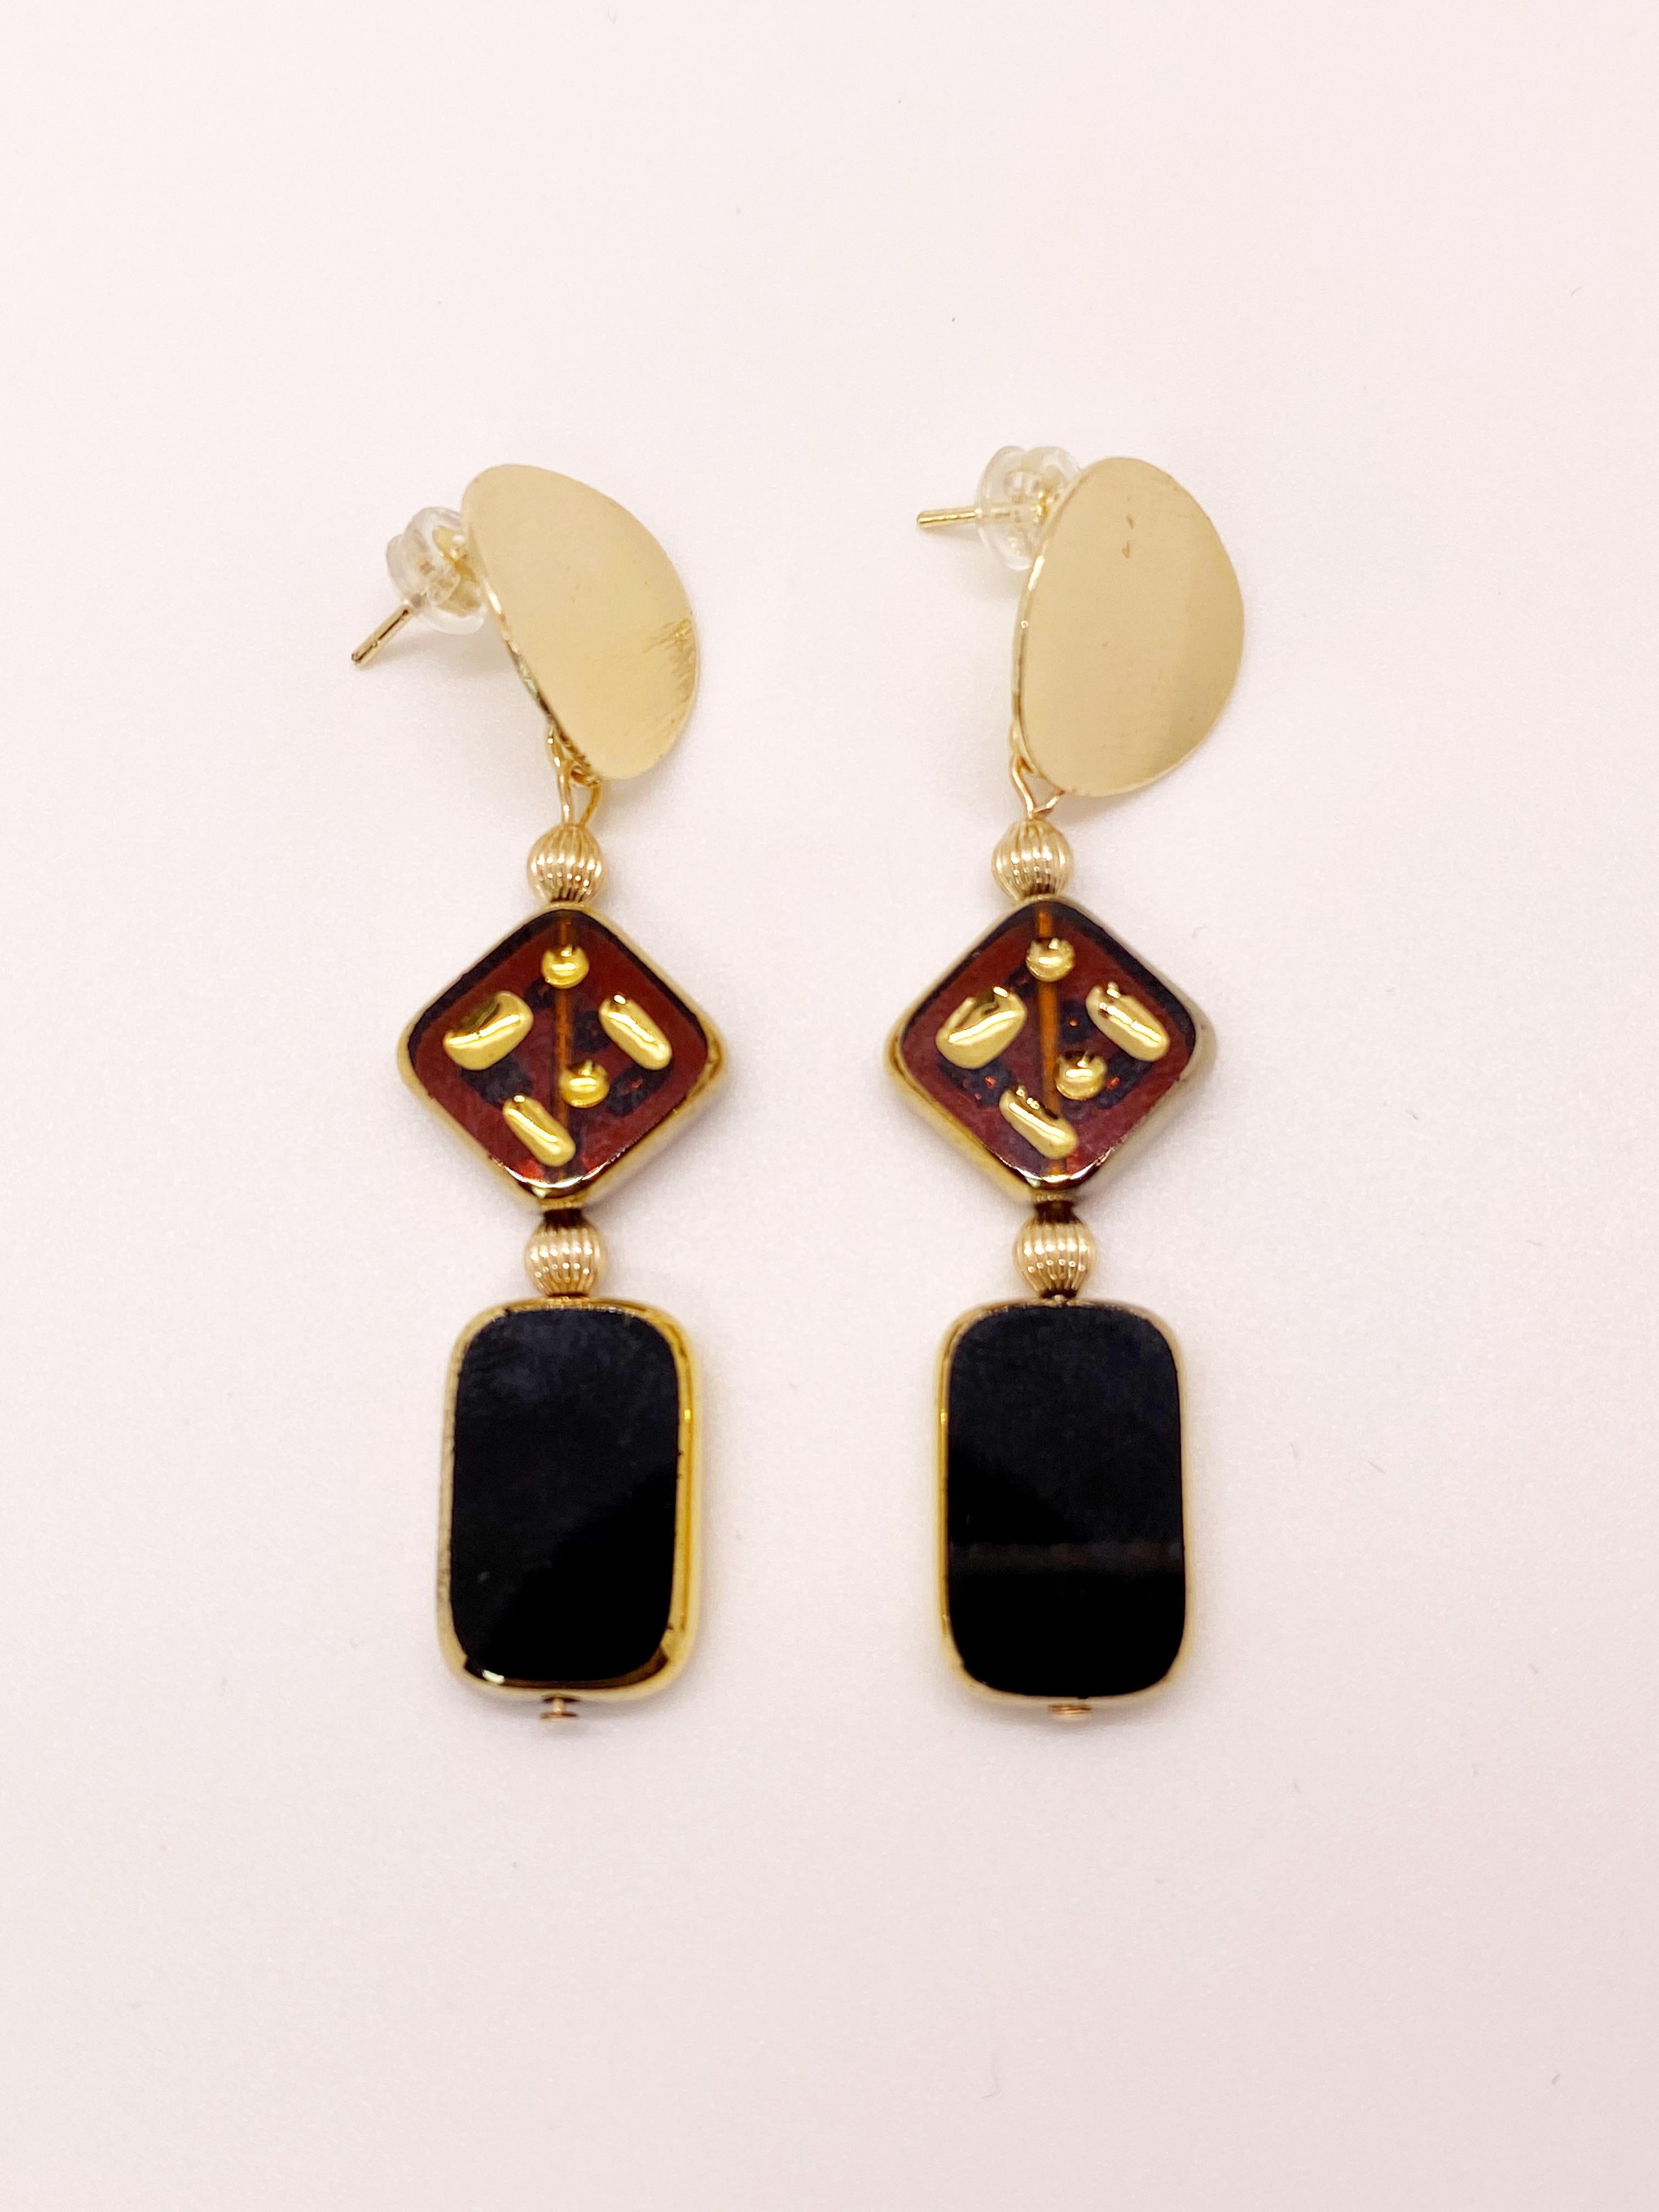 Ces boucles d'oreilles sont composées d'une perle en verre ambré brun translucide avec un motif gravé et d'une perle en tuile noire. Il s'agit de perles de verre allemandes vintage qui ont été bordées d'or 24K. Ils sont suspendus à des boucles